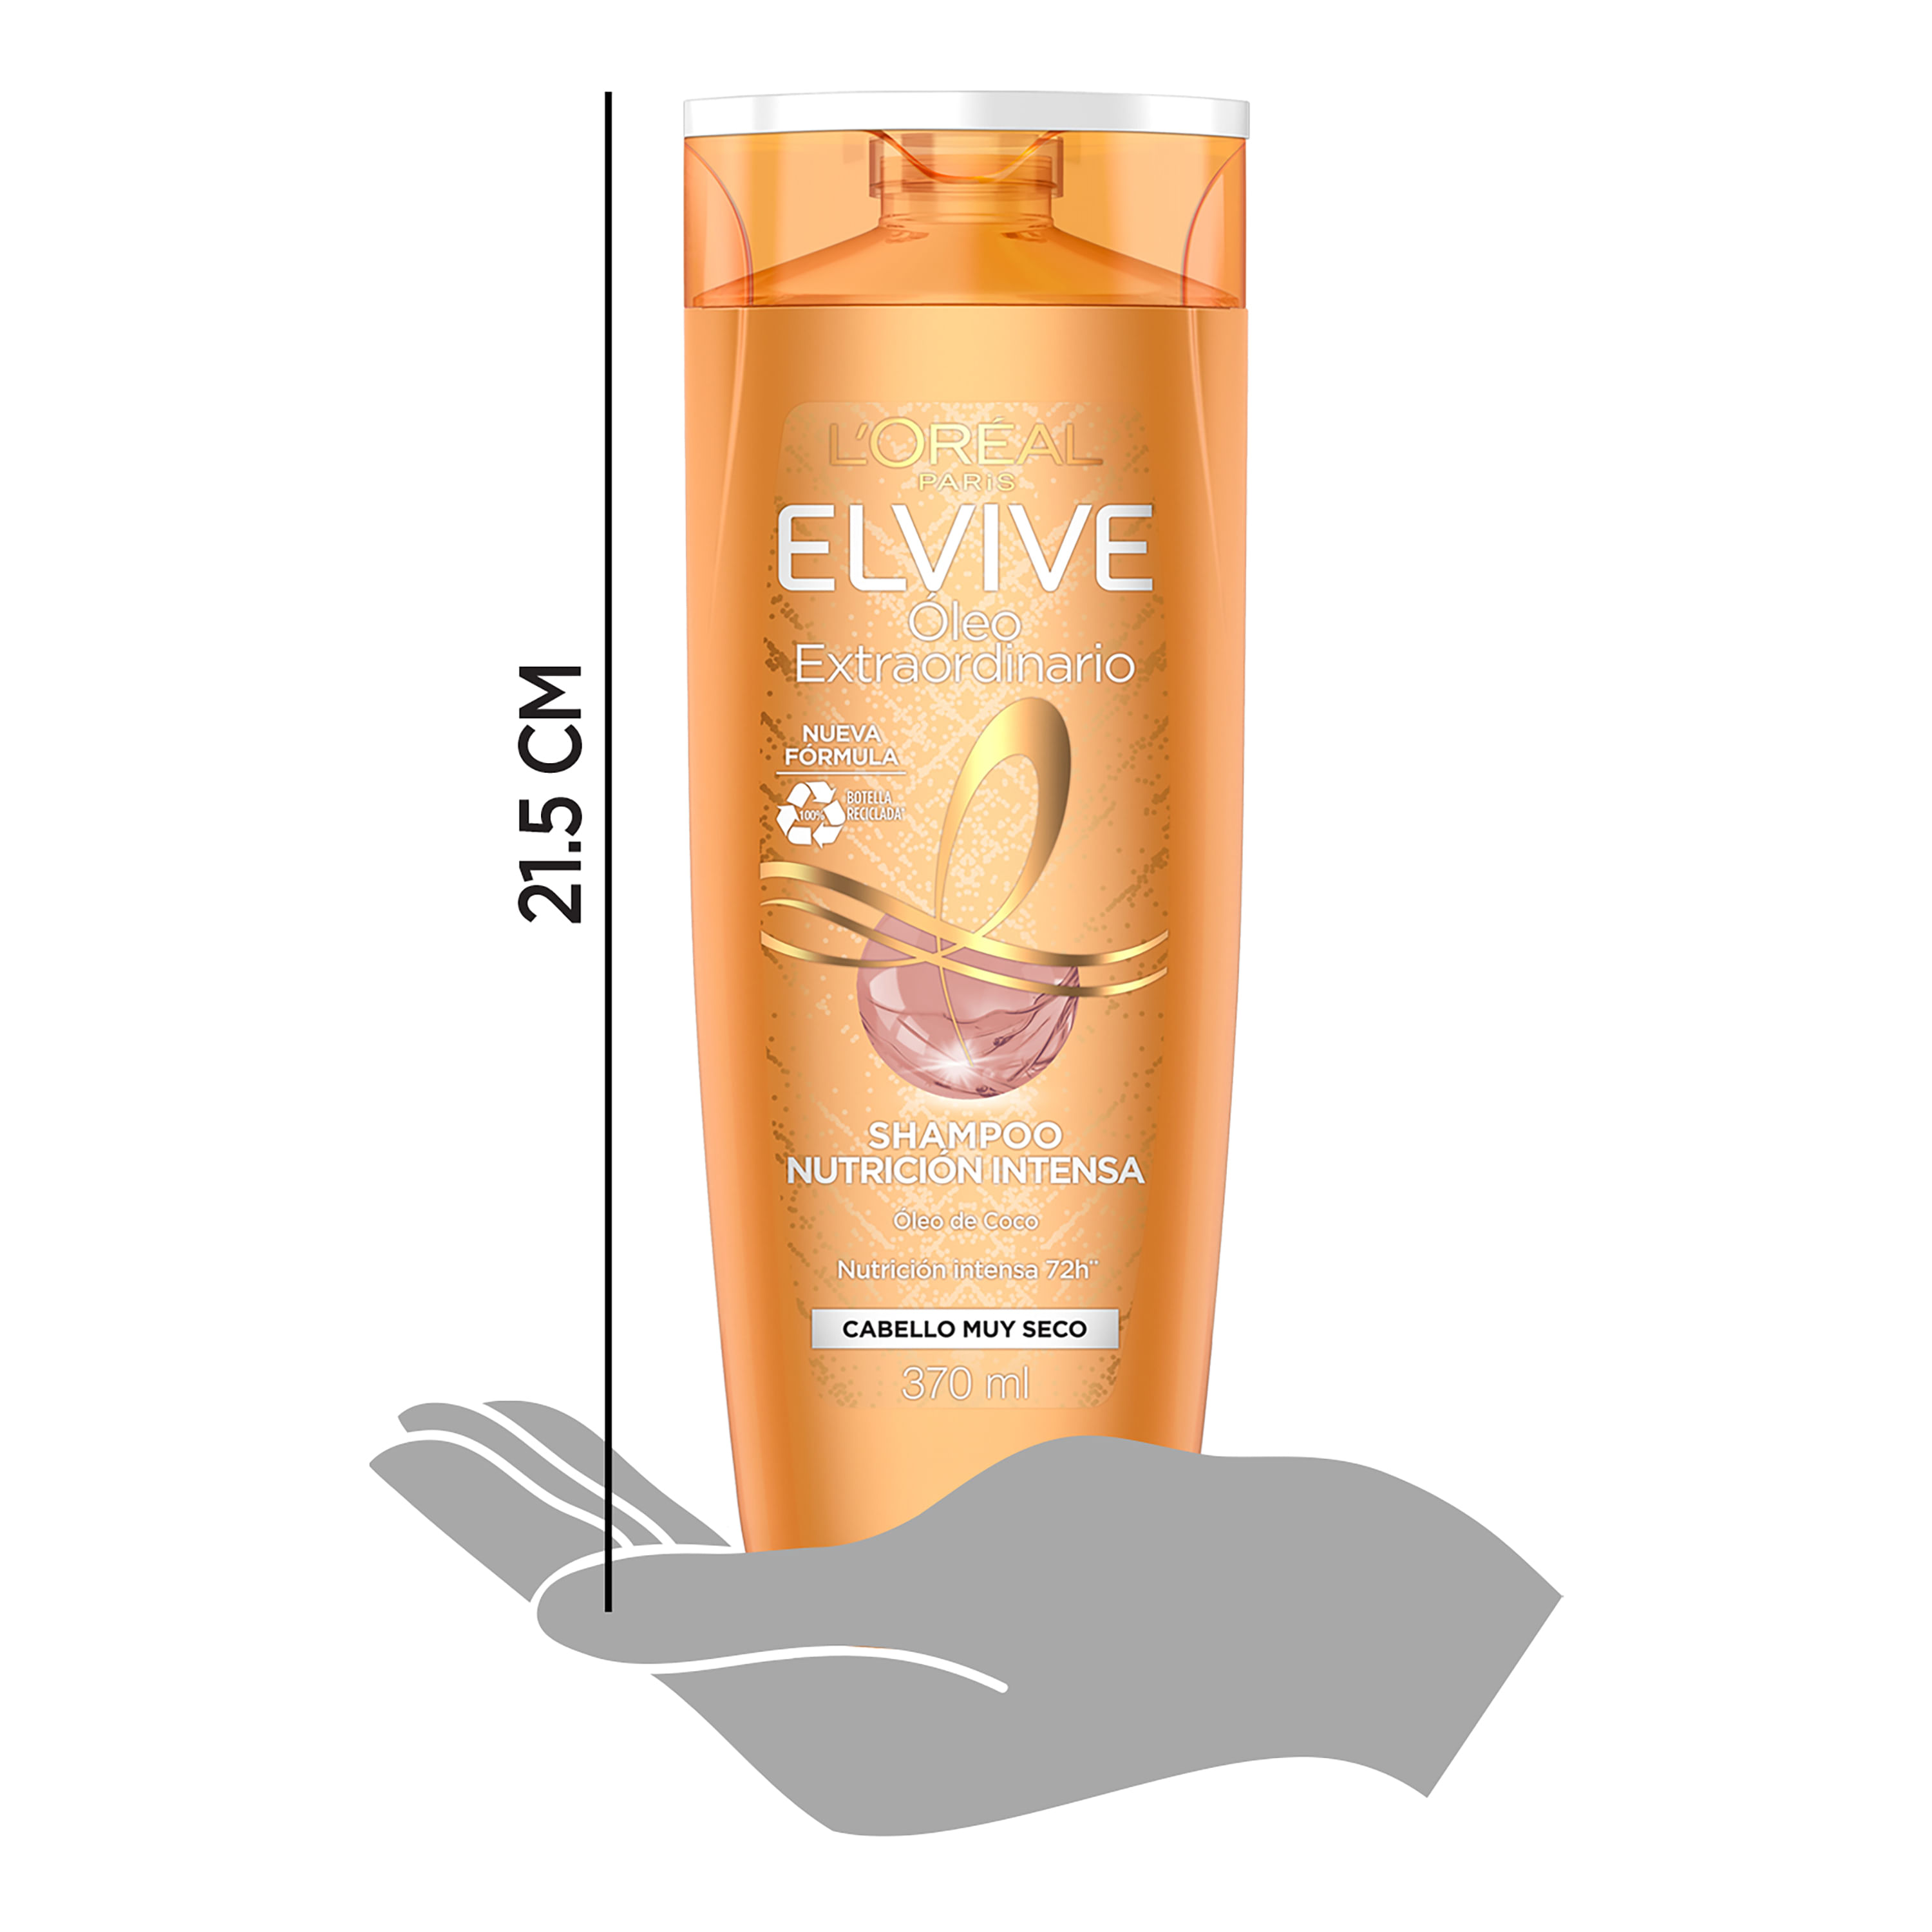 Elvive: el champú de L'Oréal ideal para el cabello seco